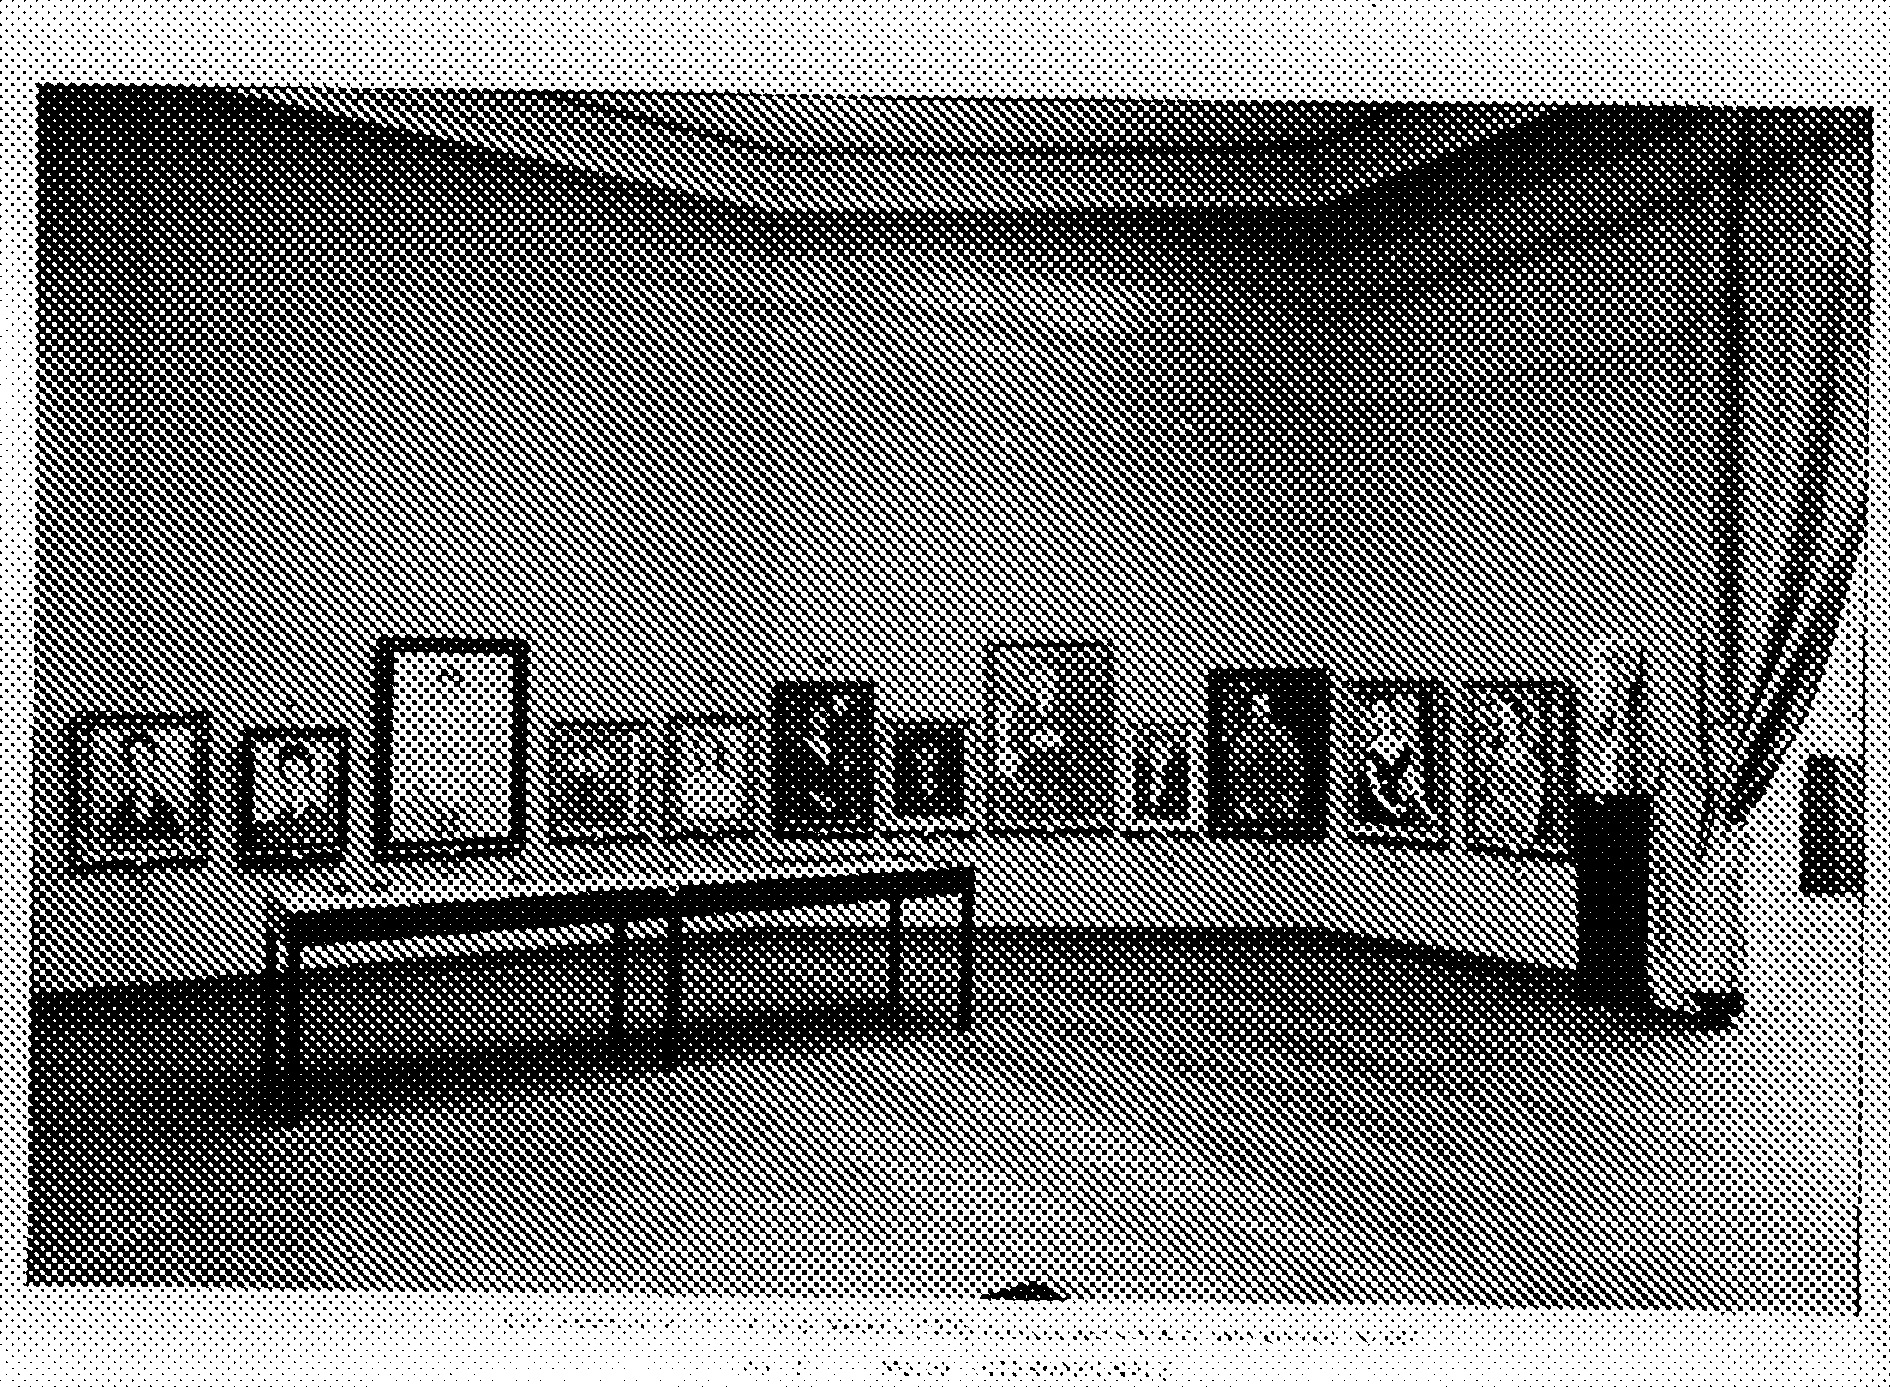 Ein Schwarz-Weiß-Foto als Beweismittel. Es zeigt den "Sitzenden Mann" auf der Biennale in Venedig im Jahr 1930.